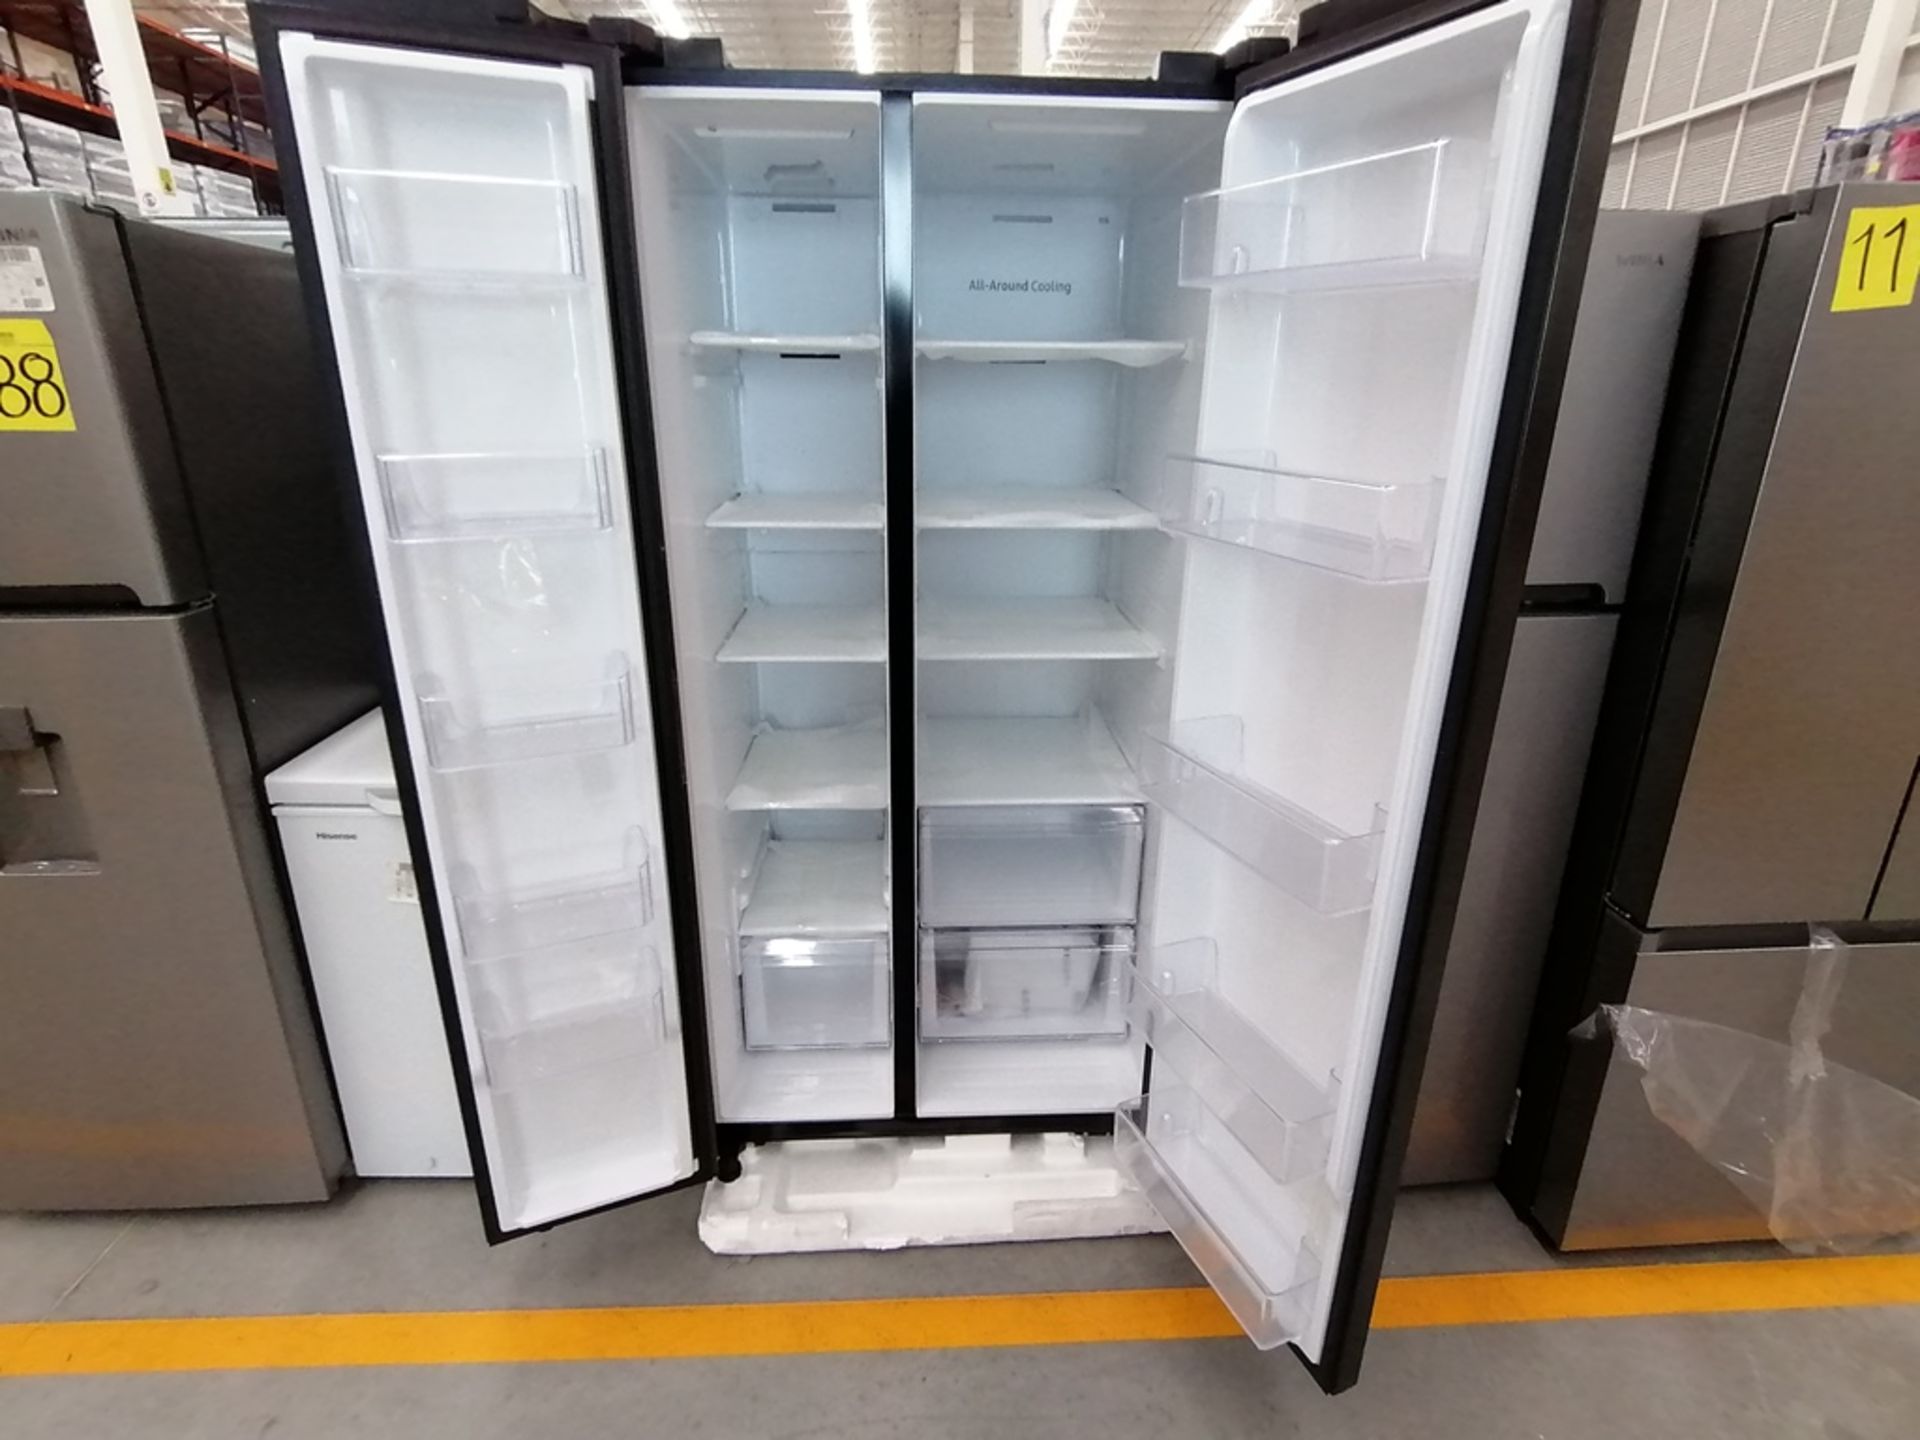 Lote de 2 refrigeradores incluye: 1 Refrigerador, Marca Samsung, Modelo RS28T5B00B1, Serie 0B2V4BAR - Image 10 of 13